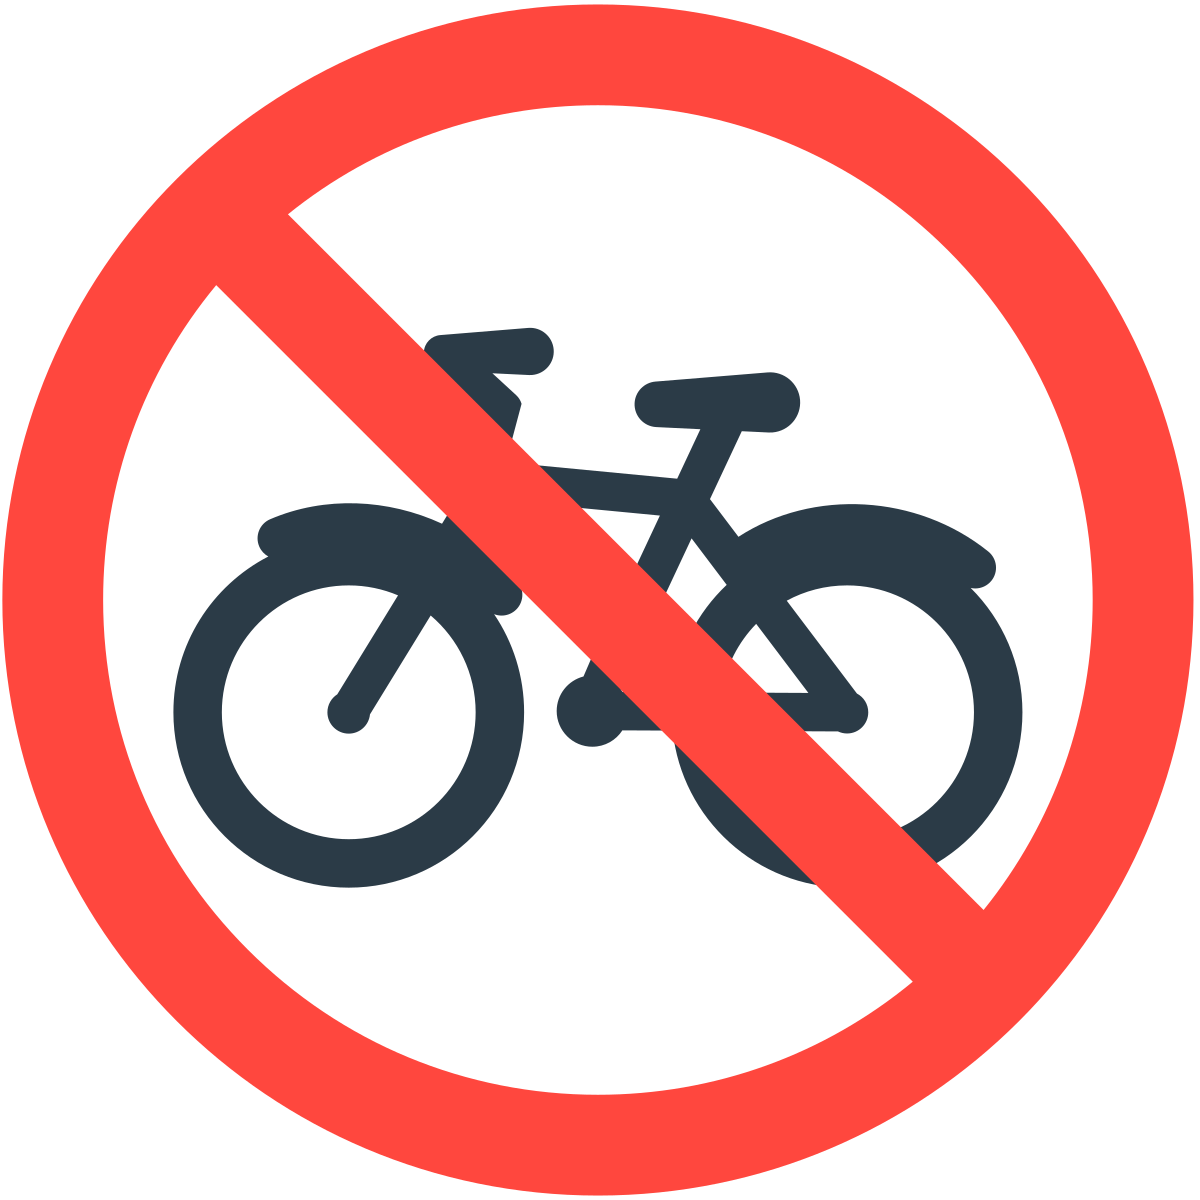 Перечеркнутые знаки дорожного движения. Знак велосипед запрещен. Знак езда на велосипеде запрещена. Знак запрещающий ездить на велосипеде. Знак перечеркнутый самокат.